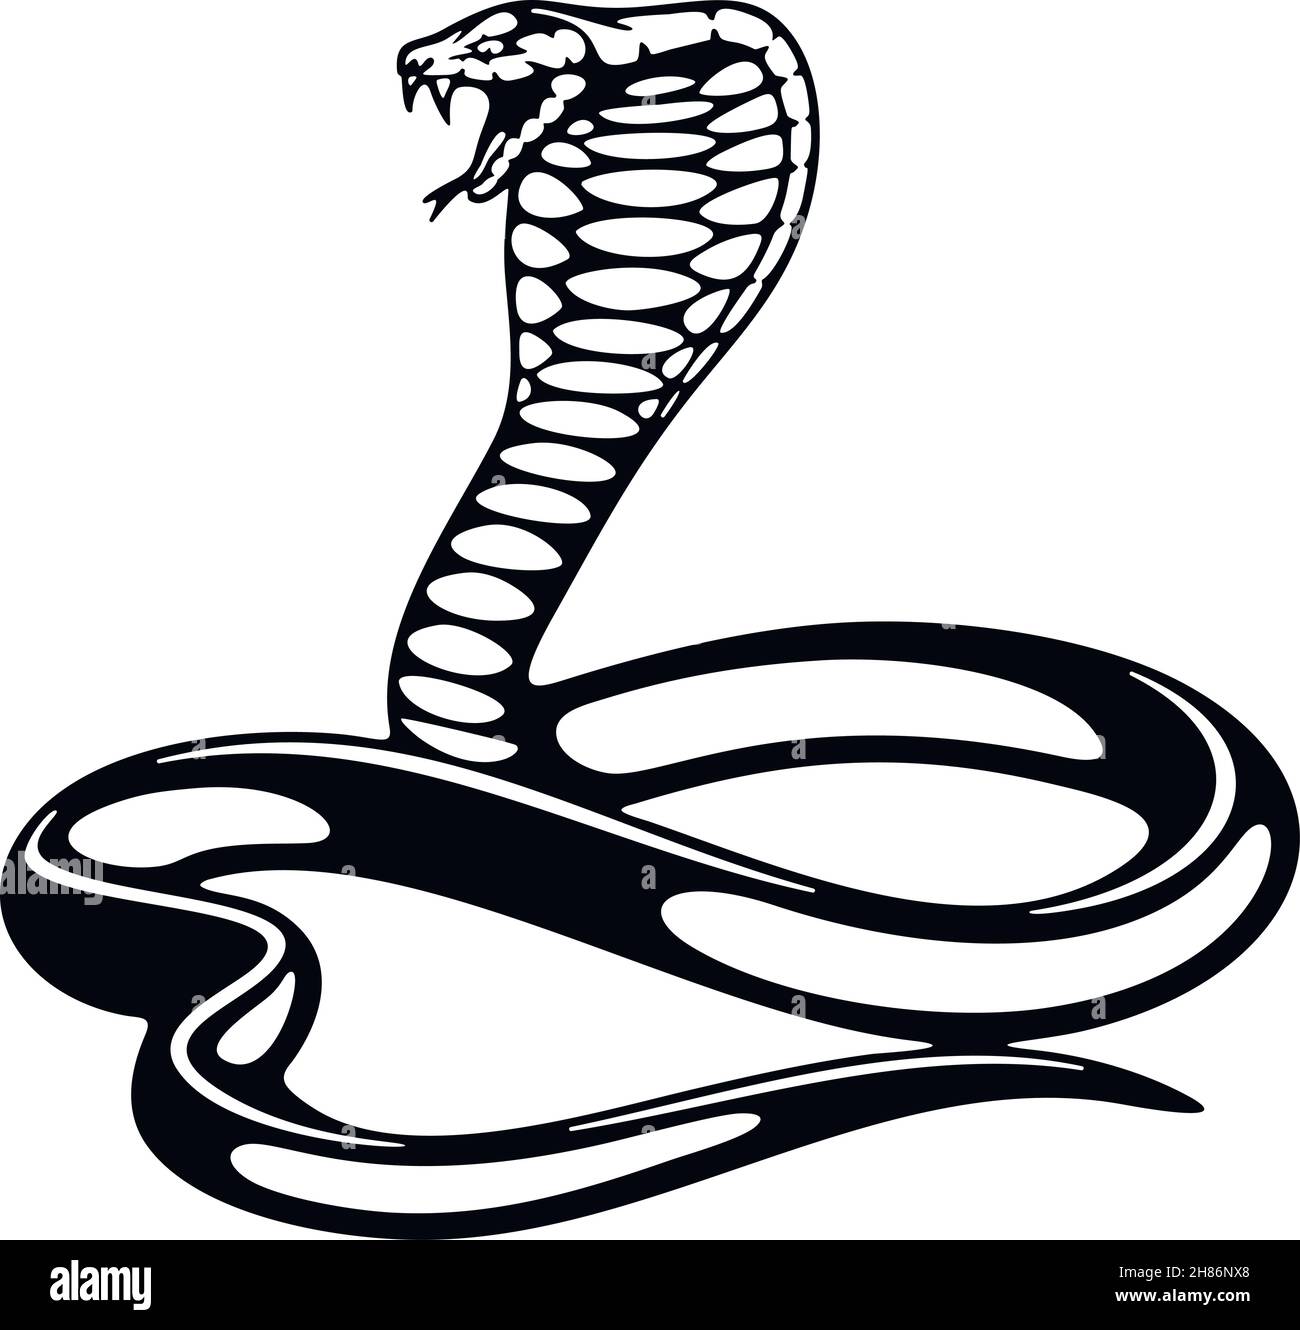 King Cobra, Snake - Reptilien der Wildnis. Schablone für Wildtiere. Haustier und tropisches Tier. Vektorschablone. Stock Vektor